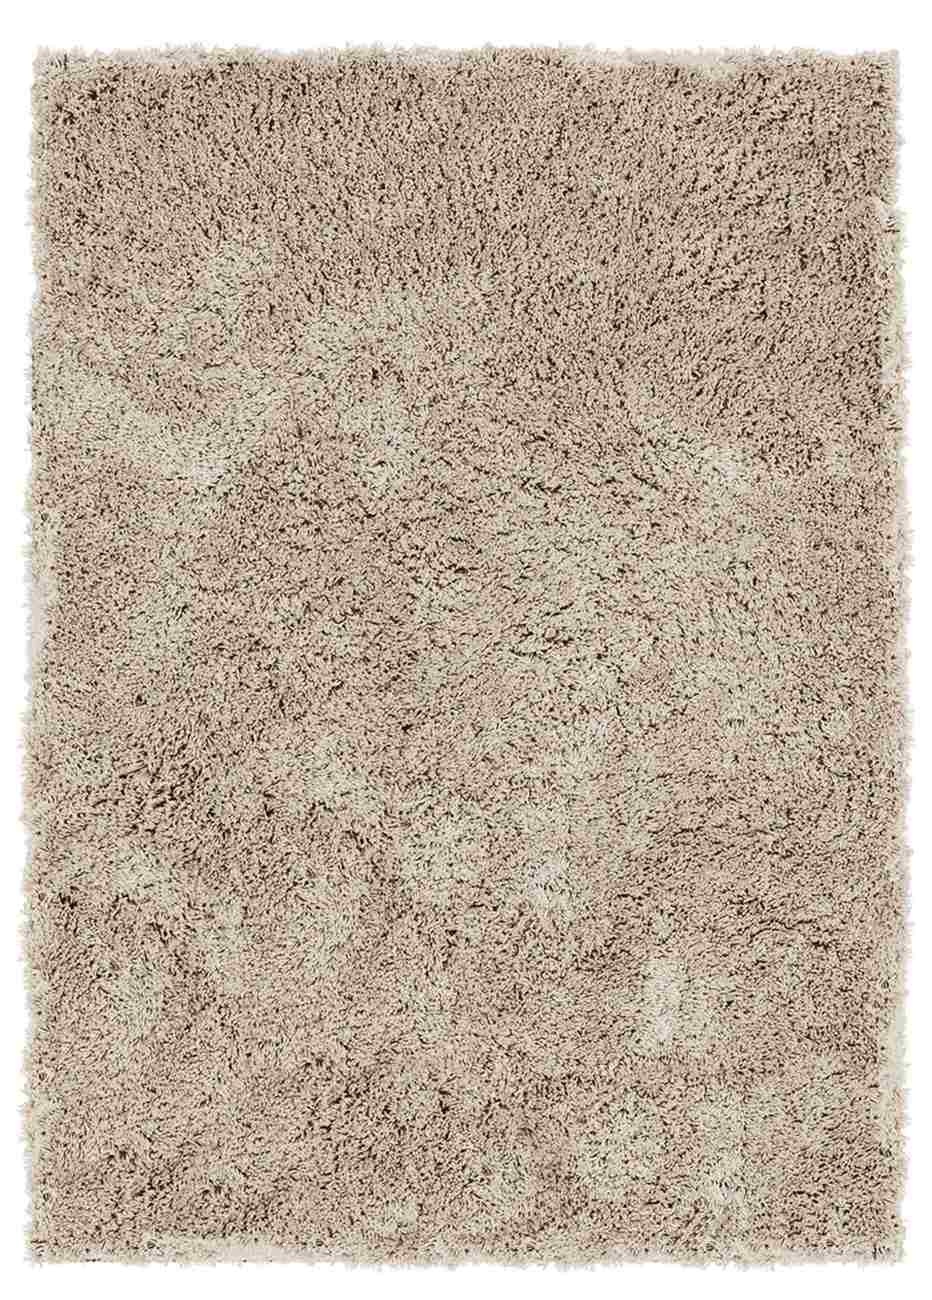 Teppich Celeste aus Kunstfasern, 200x300 cm, Taupe